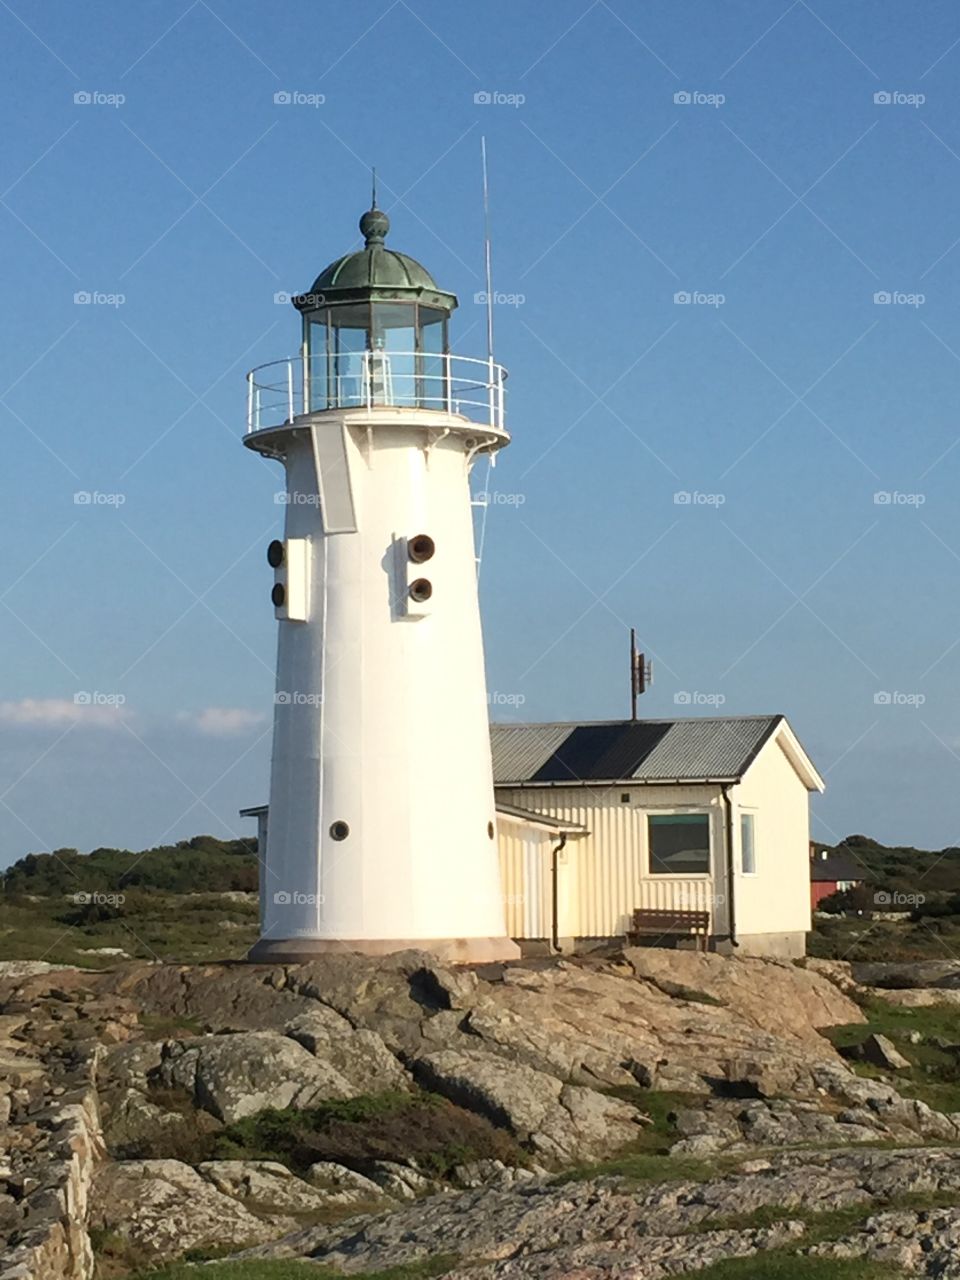 Lighthouse at Hallands Väderö